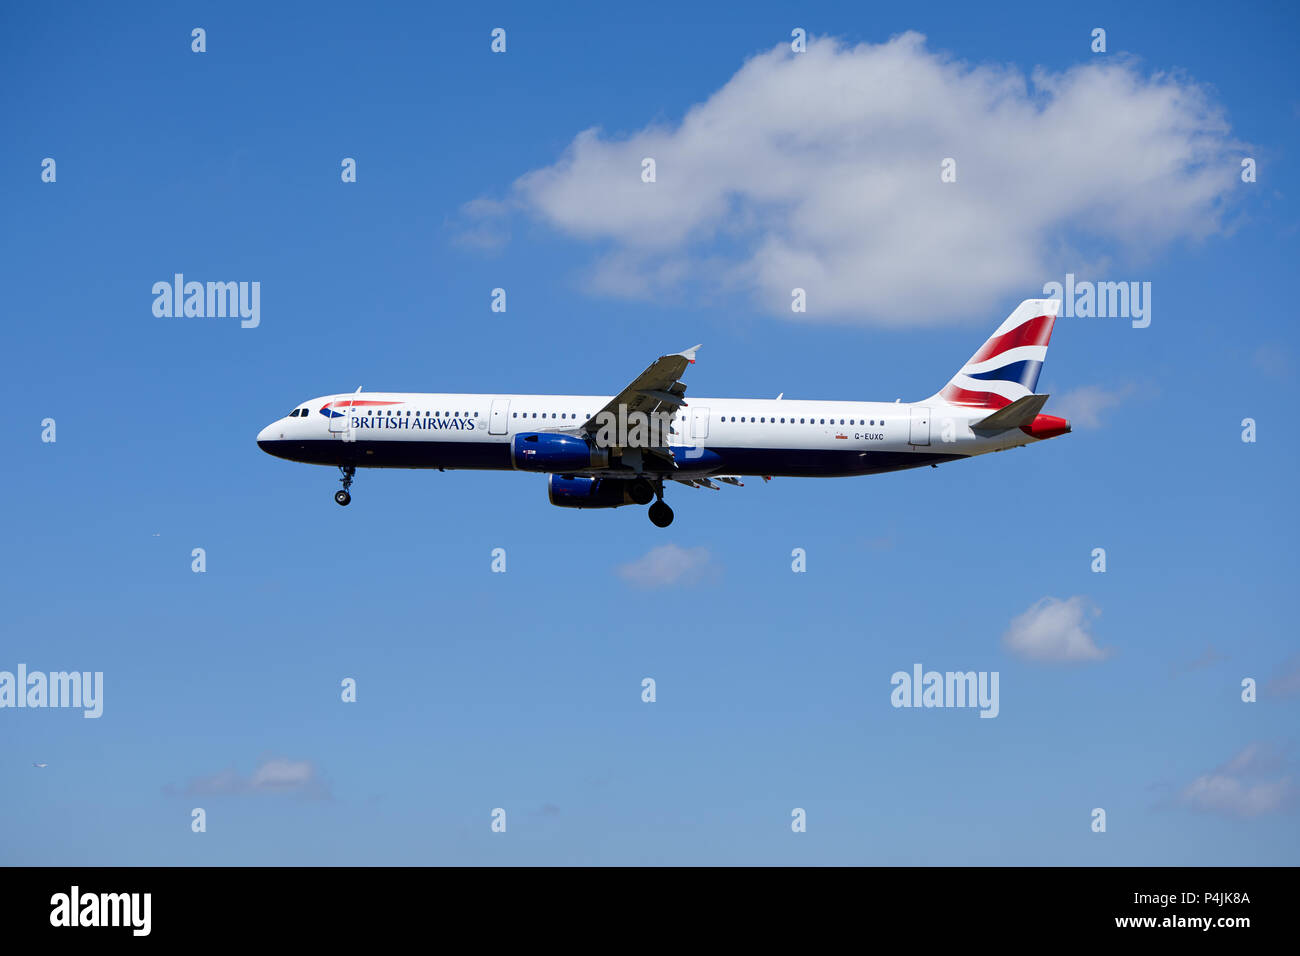 Un British Airways Airbus A321-231 aircraft, numéro d'enregistrement G-EUXC, approche d'un atterrissage. Banque D'Images